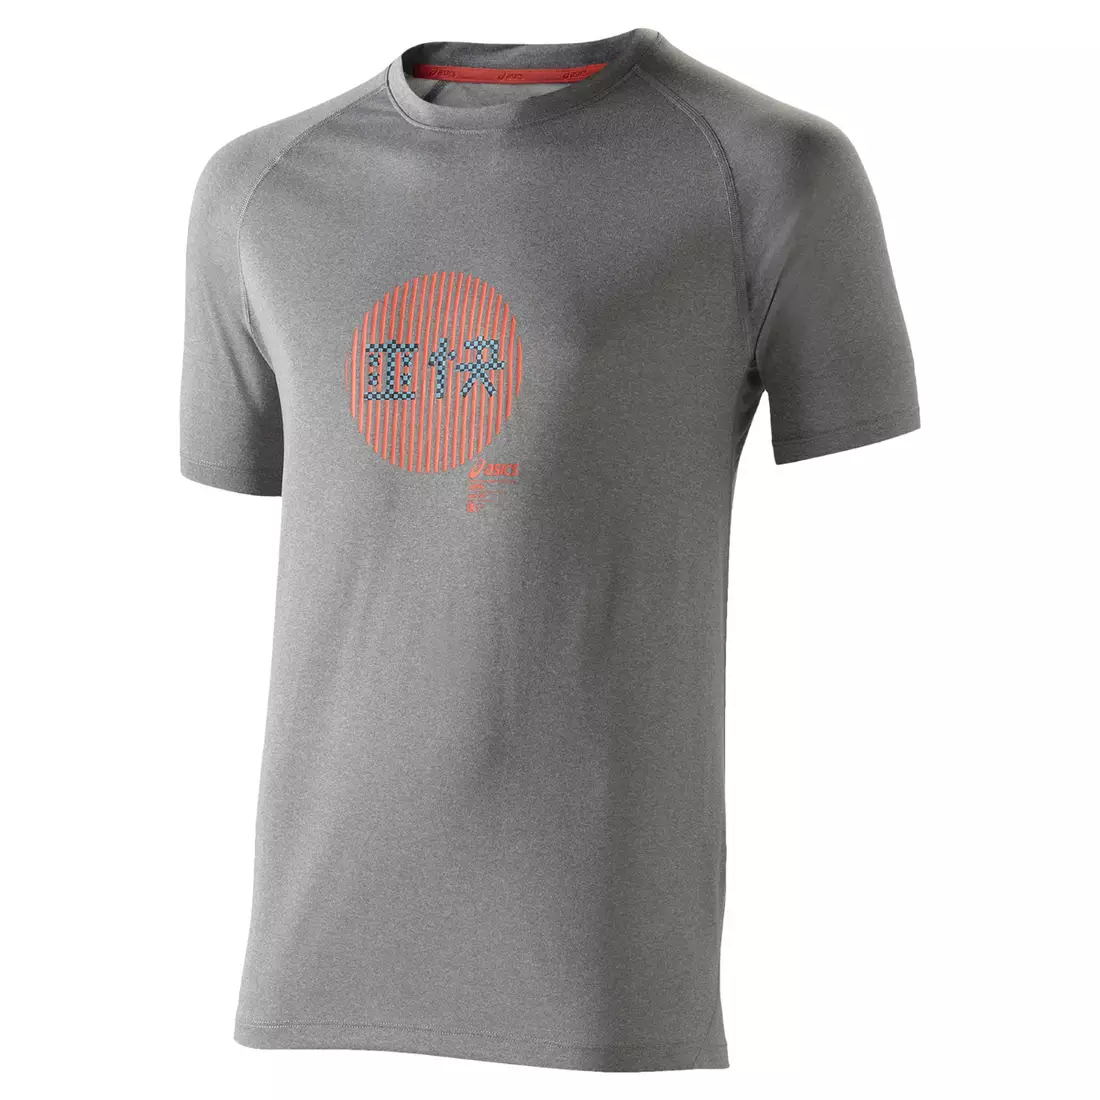 ASICS 110519-0714 SOUKAI GRAPHIC TOP - pánske bežecké tričko, farba: šedá